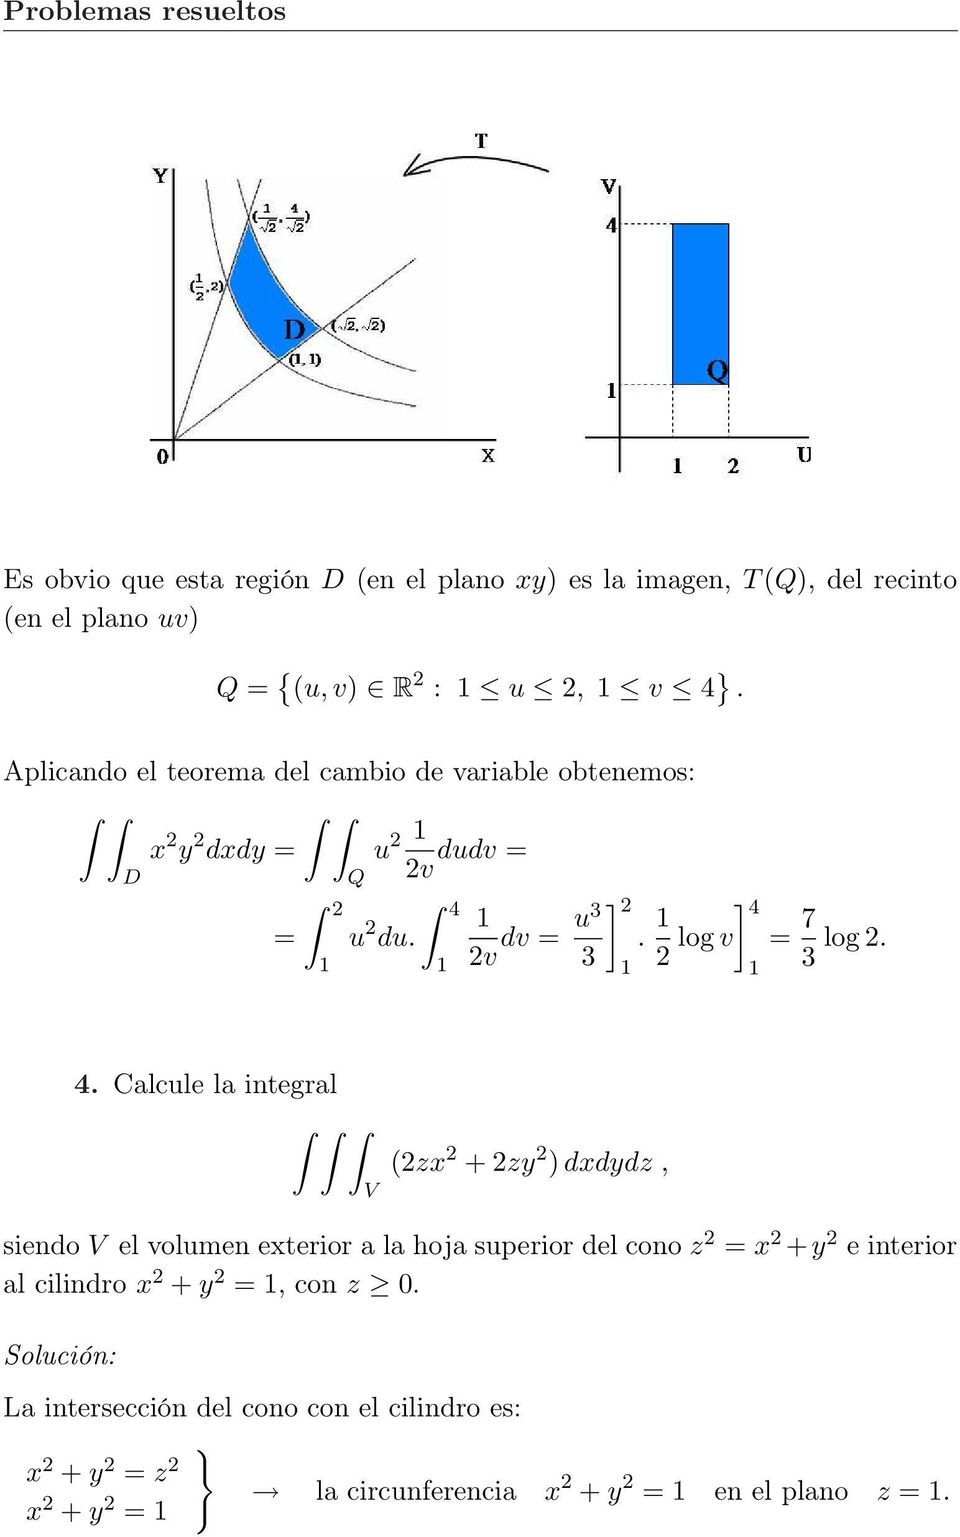 3 4. Calcule la integral V (zx + zy ) dxdydz, siendo V el volumen exterior a la hoja superior del cono z x + y e interior